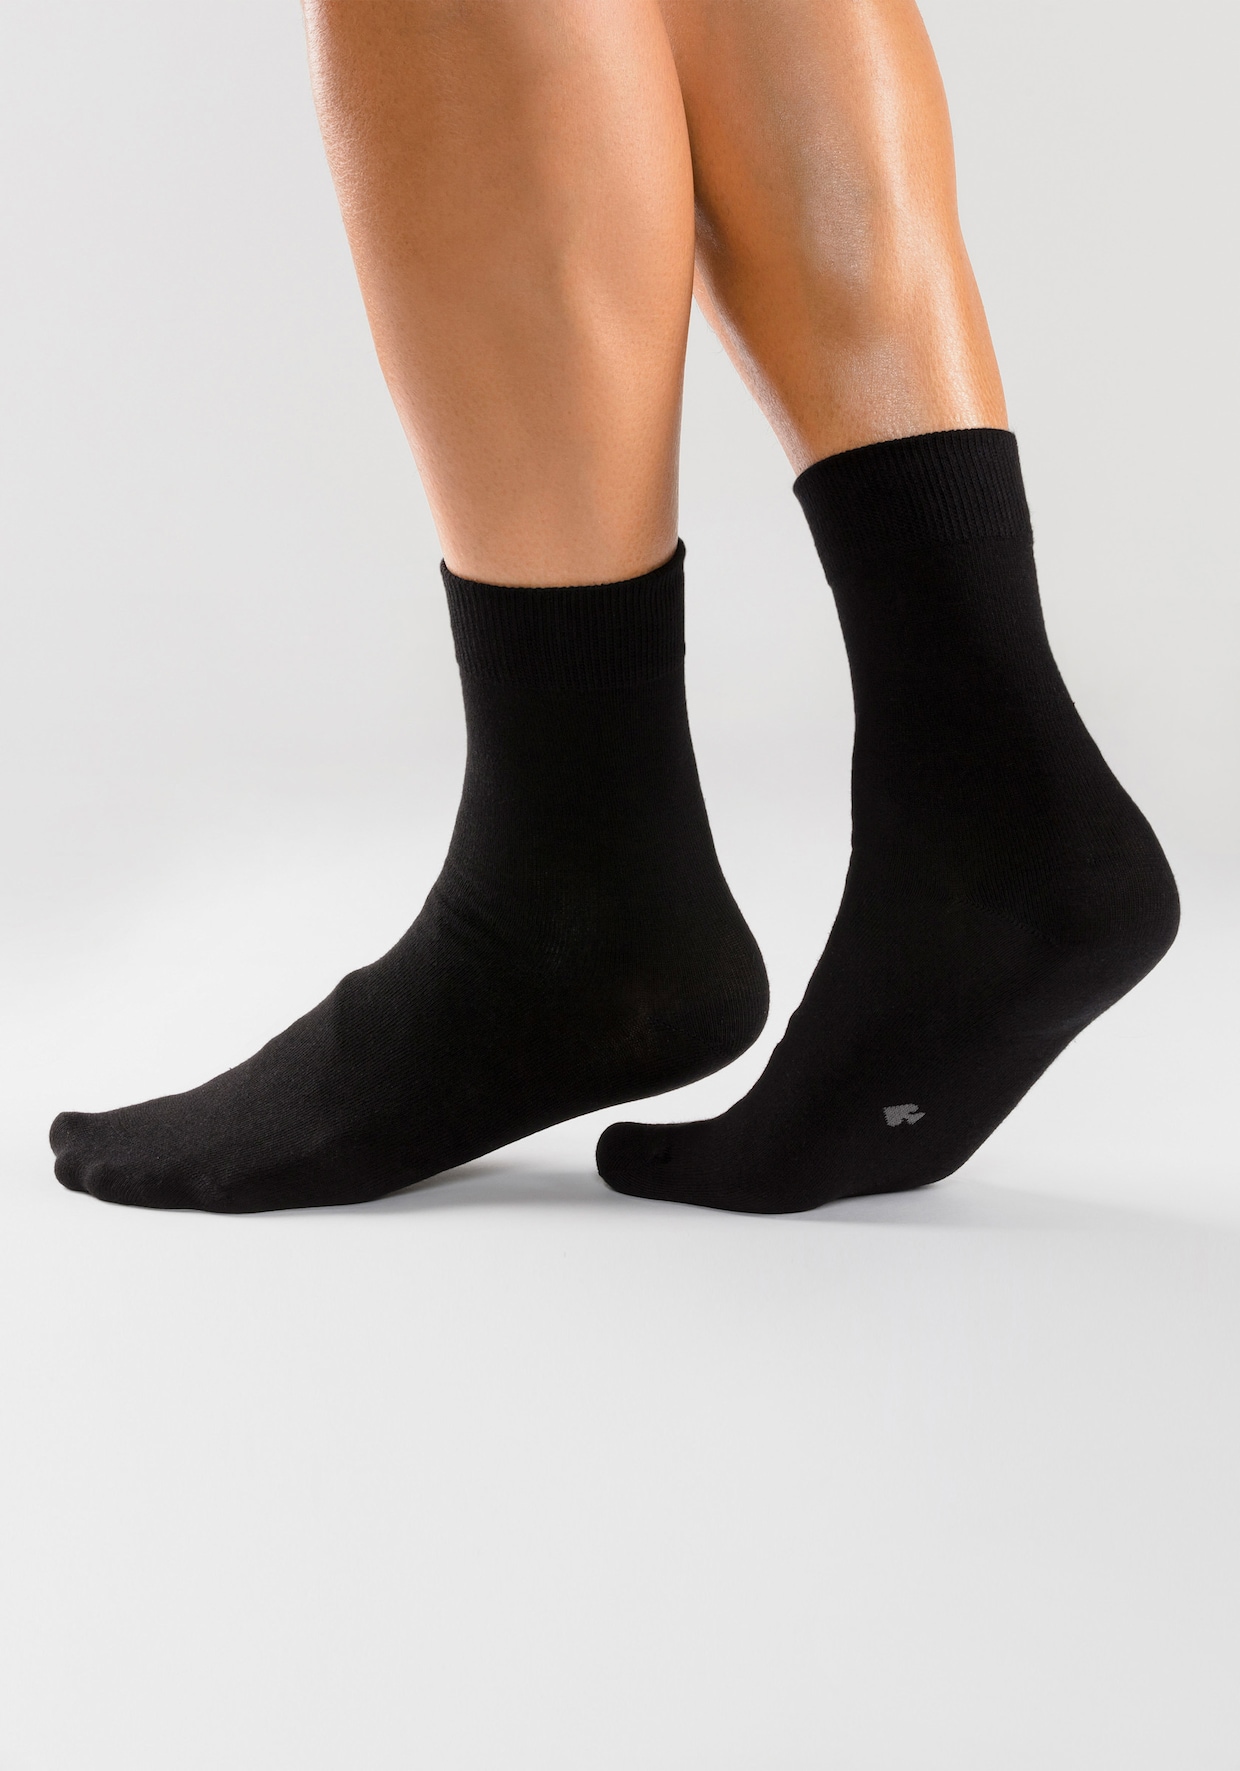 H.I.S chaussettes basiques - 10x noir